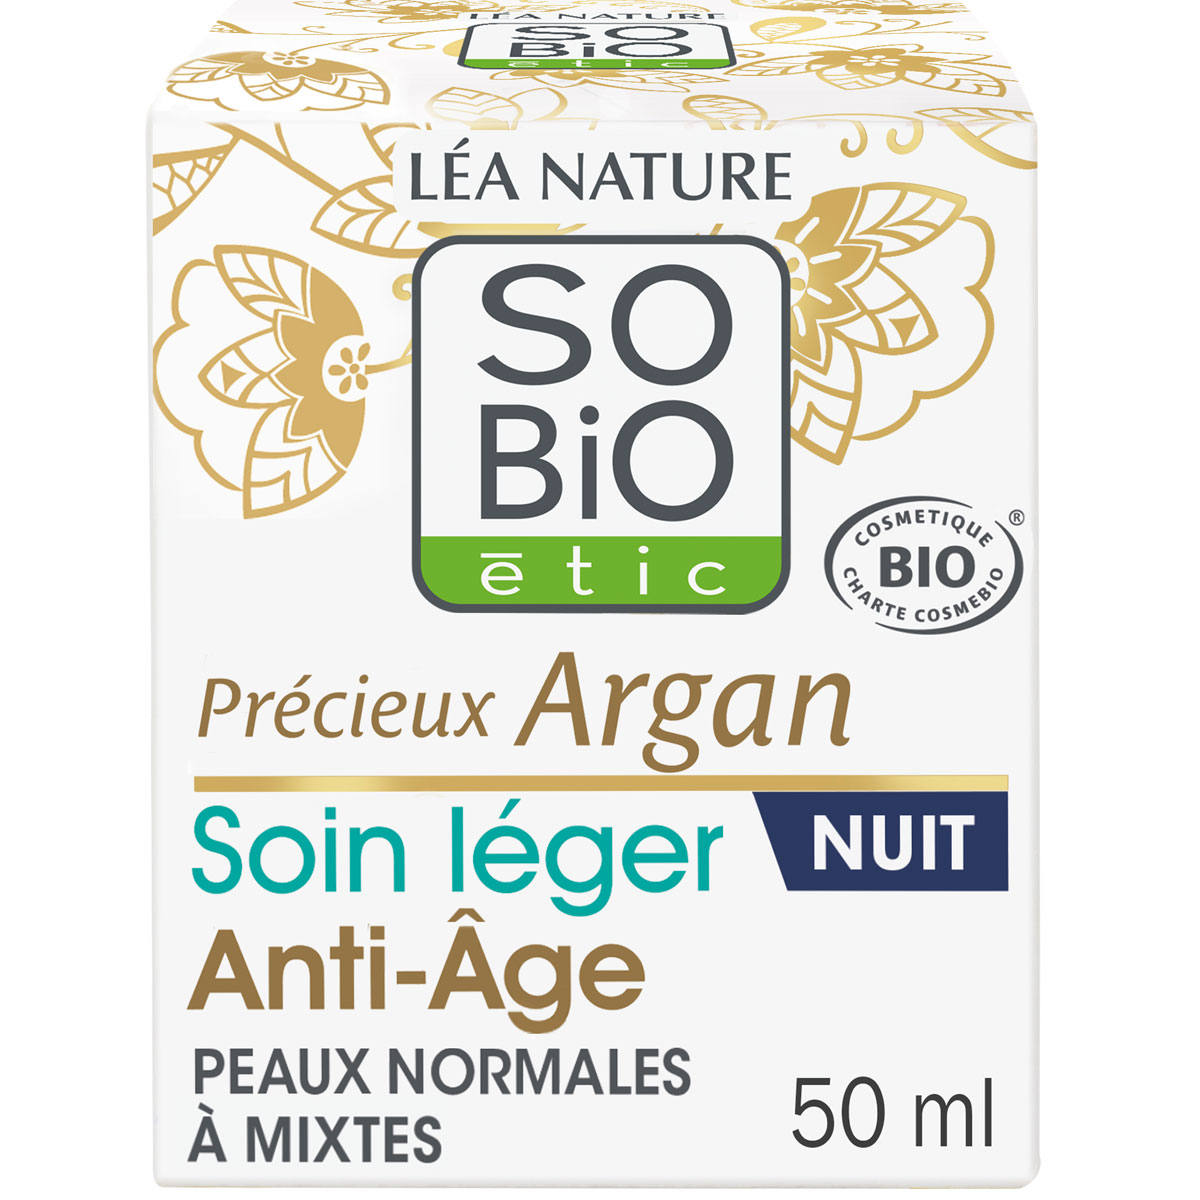 Soin léger anti-âge nuit bio - Huile d'argan - Peaux normales à mixtes - 50 ml